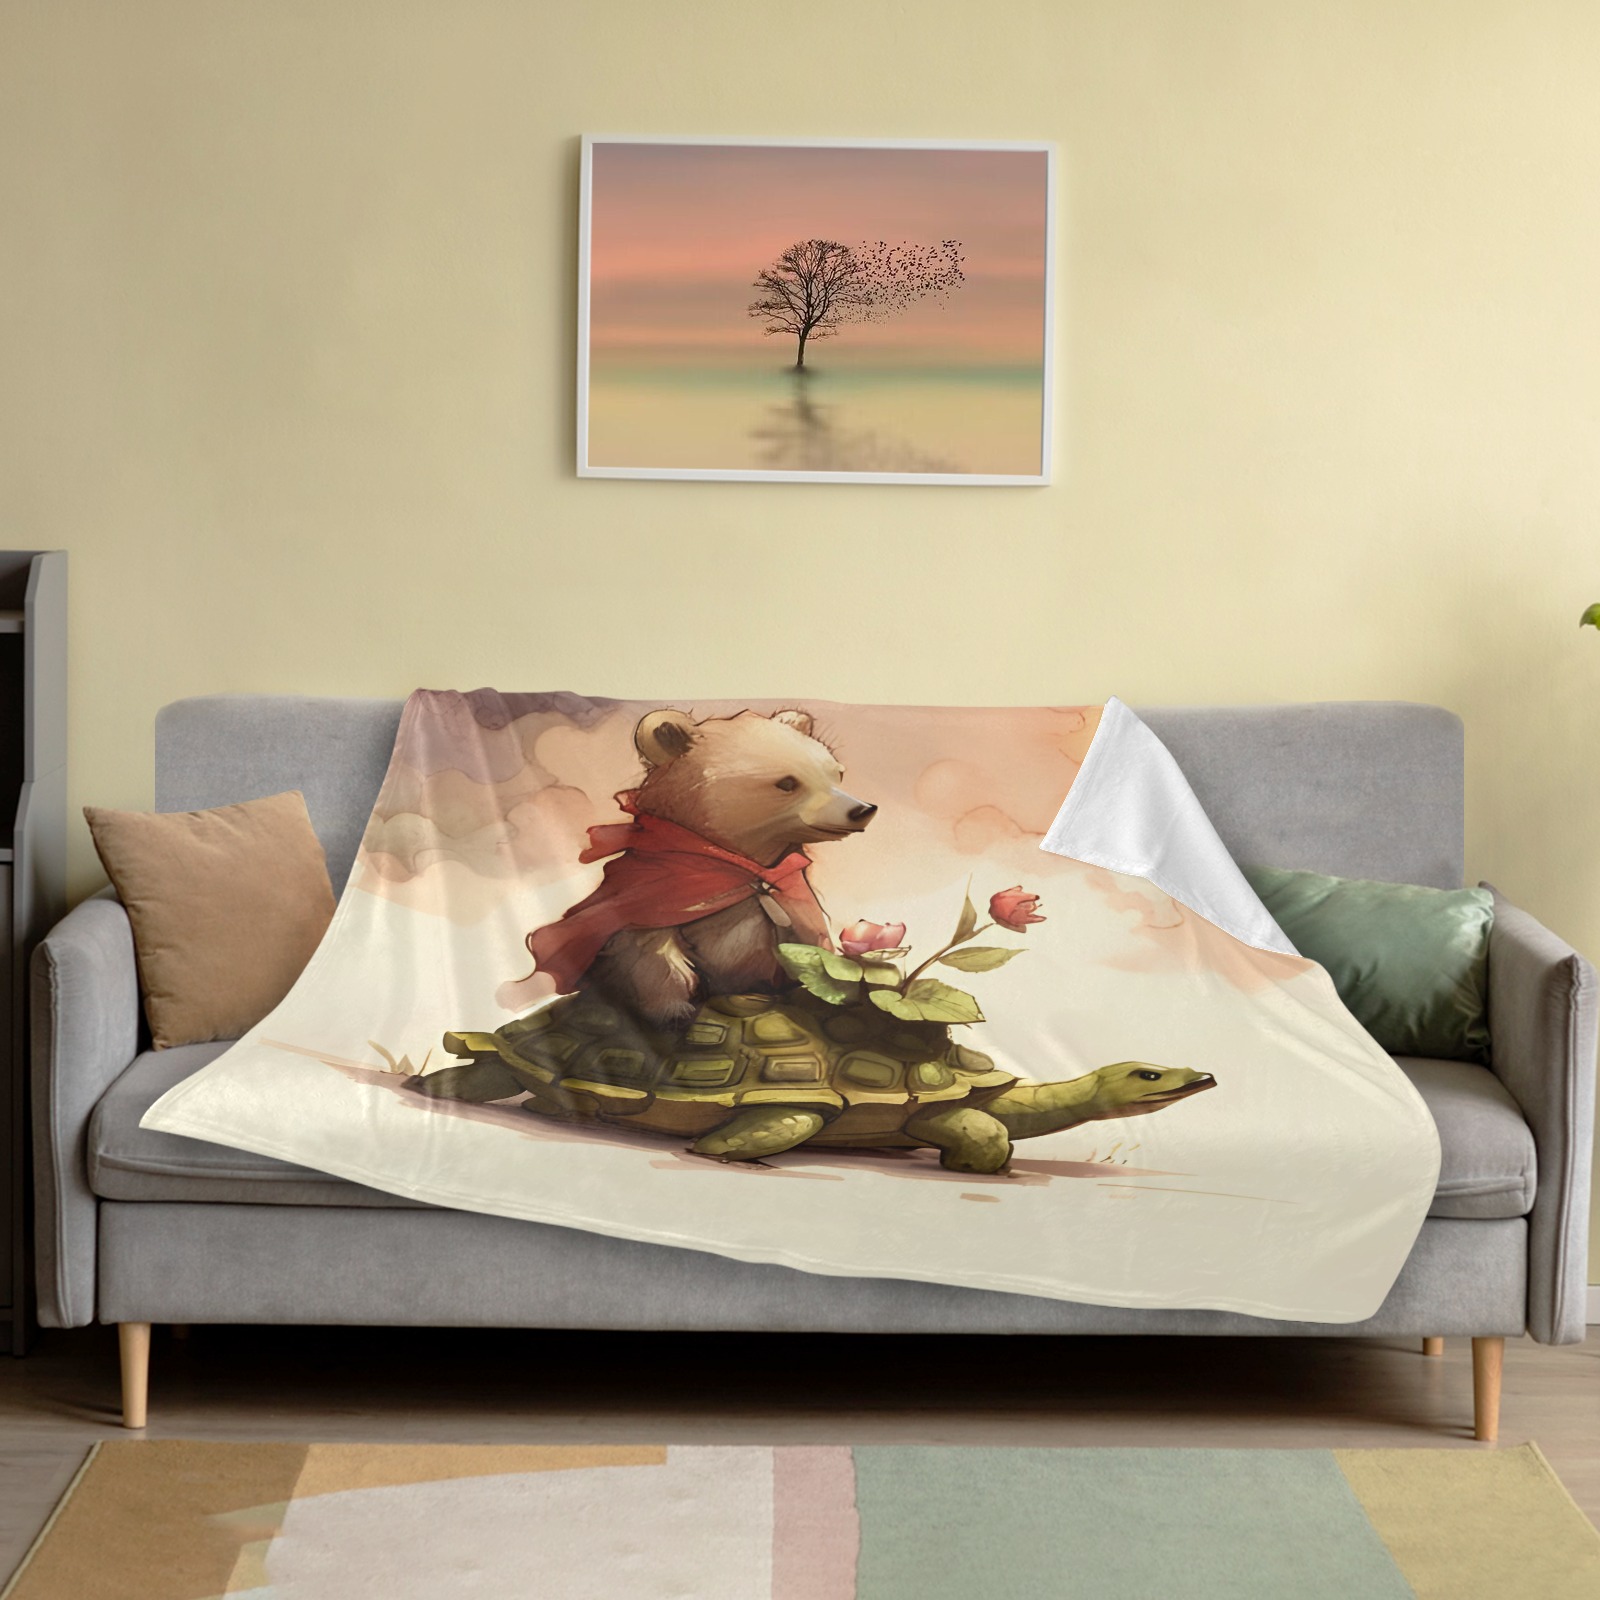 Little Bears 4 Ultra-Soft Micro Fleece Blanket 50"x40"